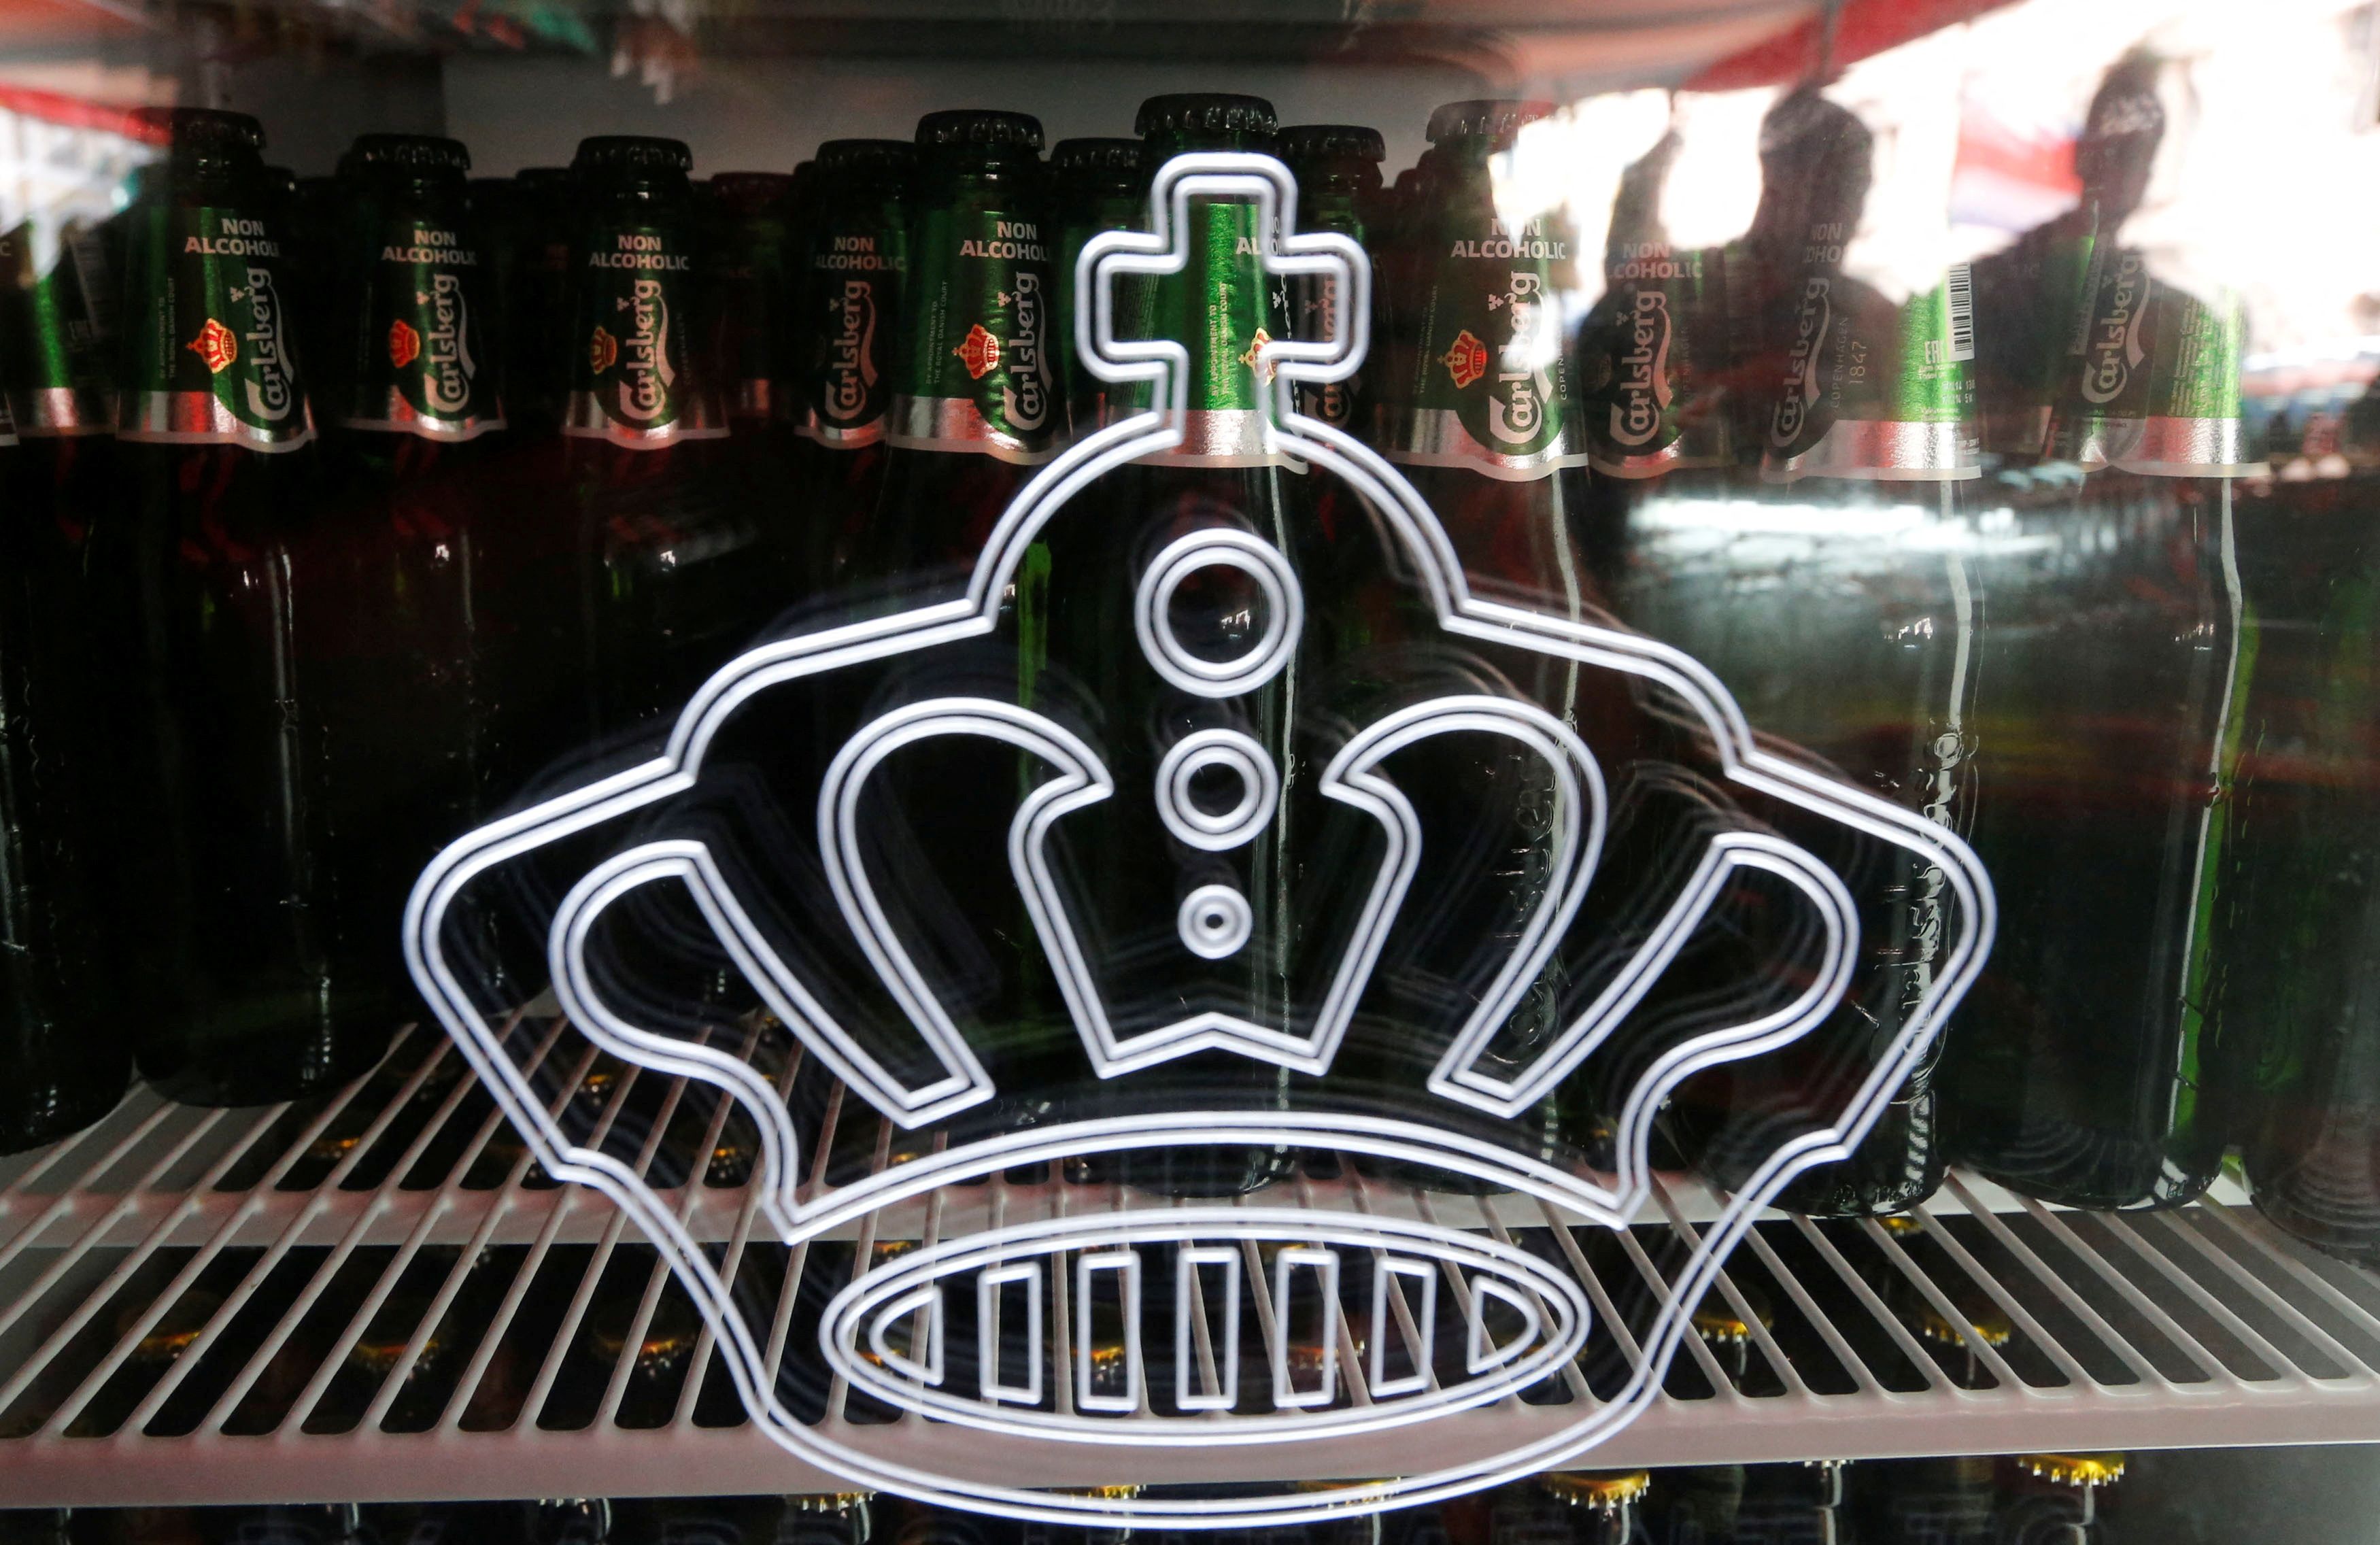 Bottles of Carlsberg beer are seen in fridge in a bar in St. Petersburg